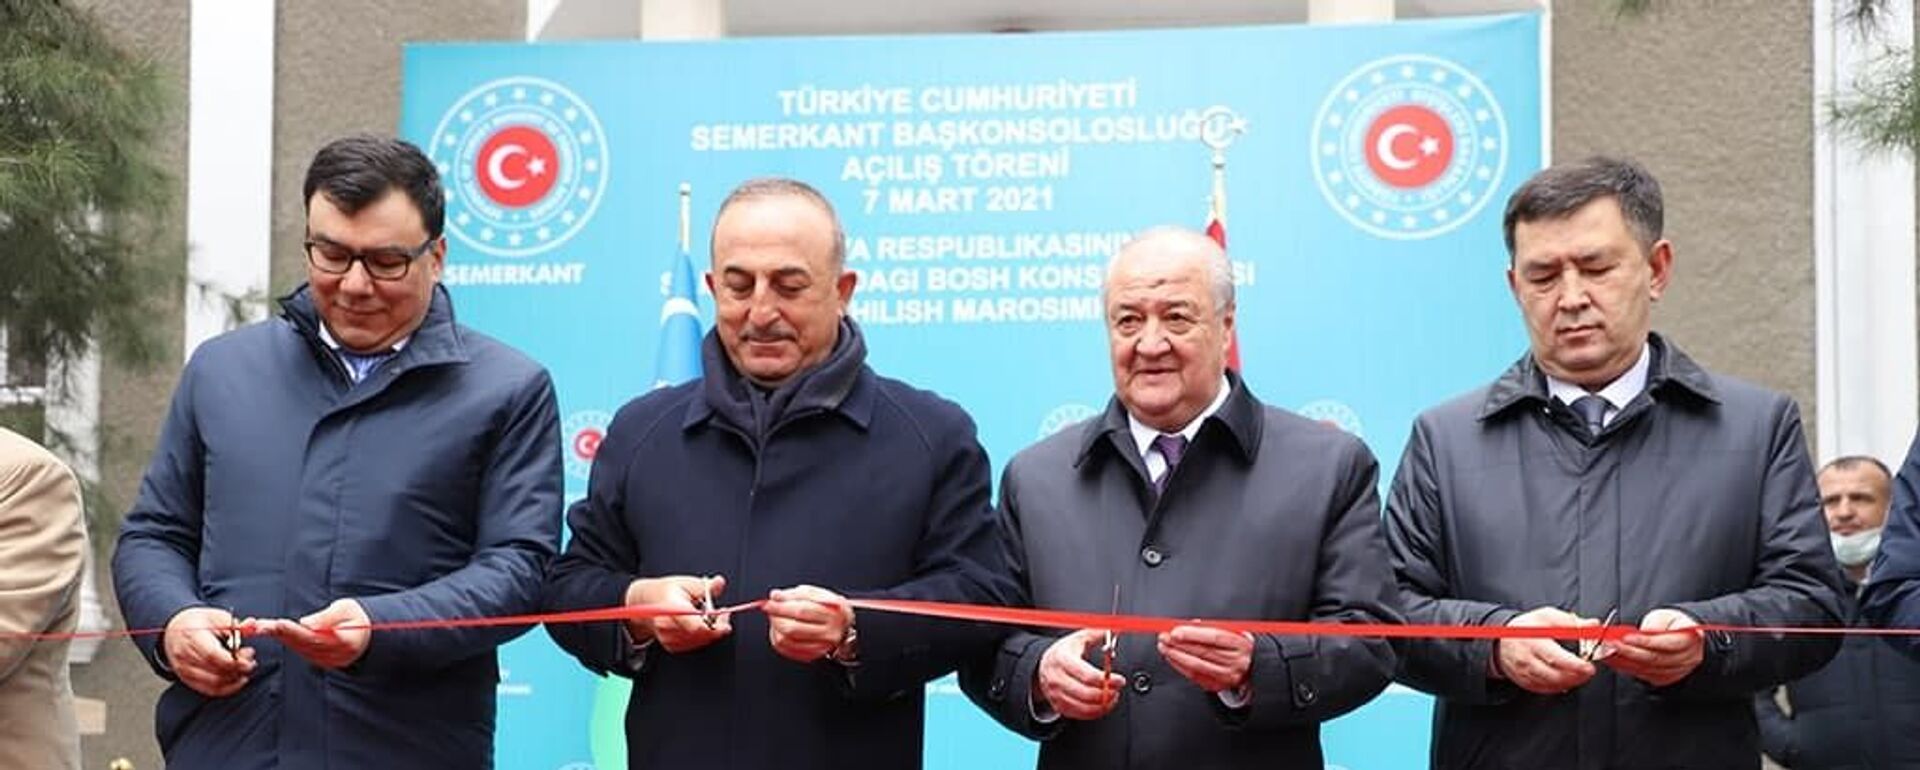 Церемония открытия генконсульства Турции в Самарканде - Sputnik Узбекистан, 1920, 08.03.2021